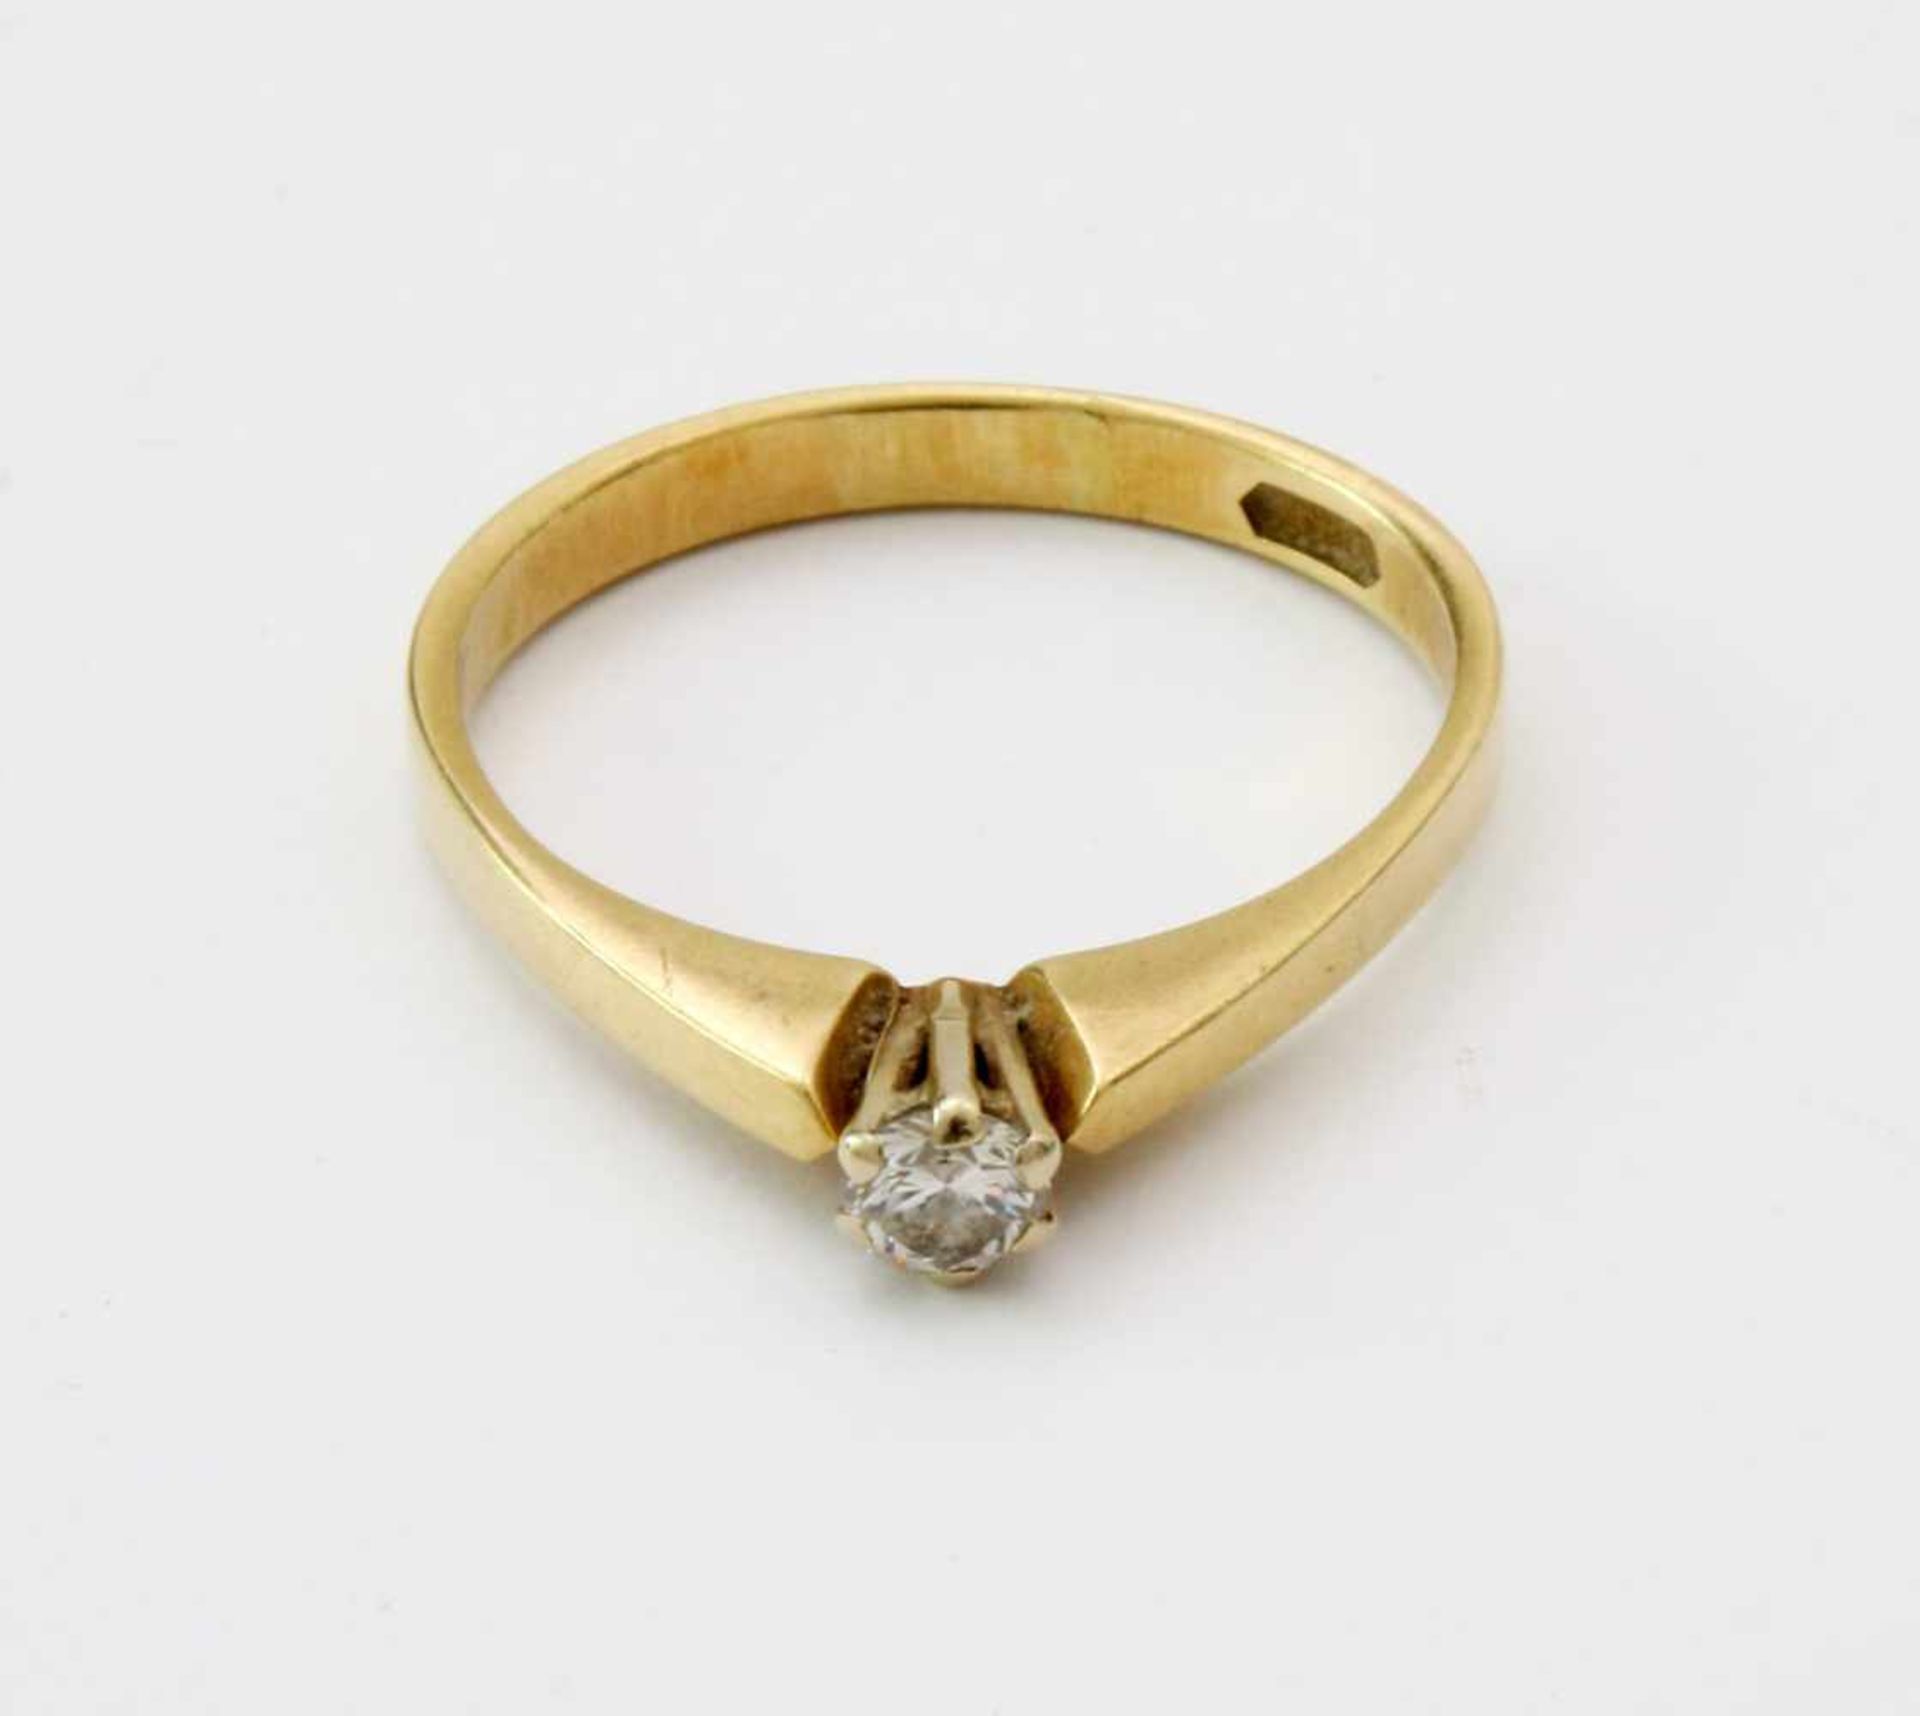 Gelbgold-Ring mit Brillant SolitärGG 585, Brillant 0,14 ct., Ringgröße: 53/54, Gew.: 2,0 g. - Image 2 of 4